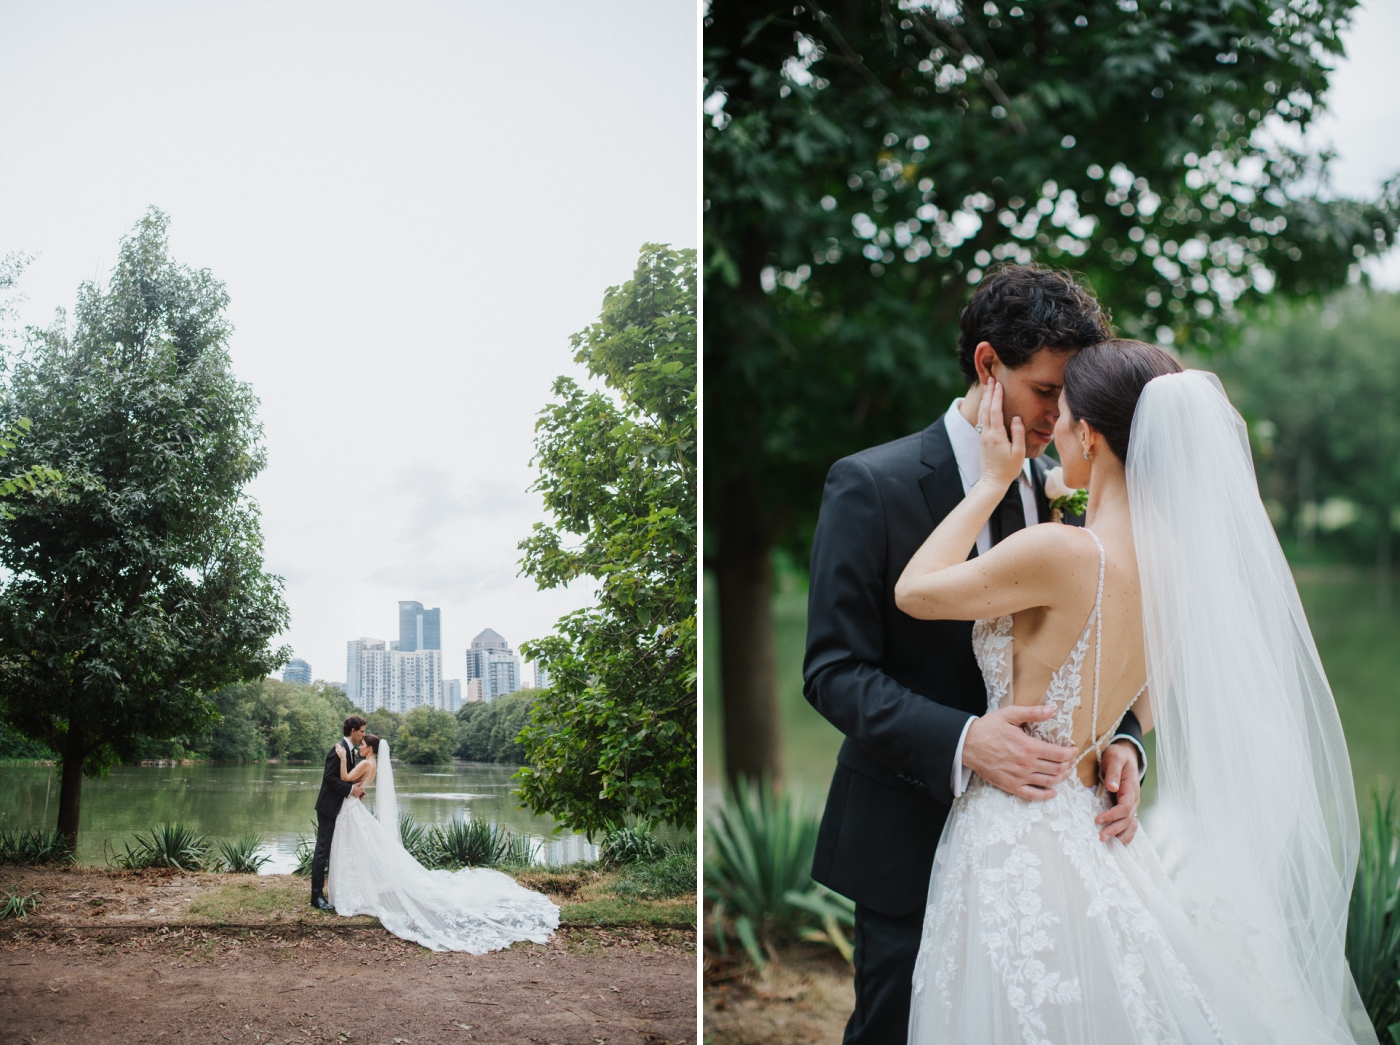 Romantic elopement in Piedmont Park in Atlanta